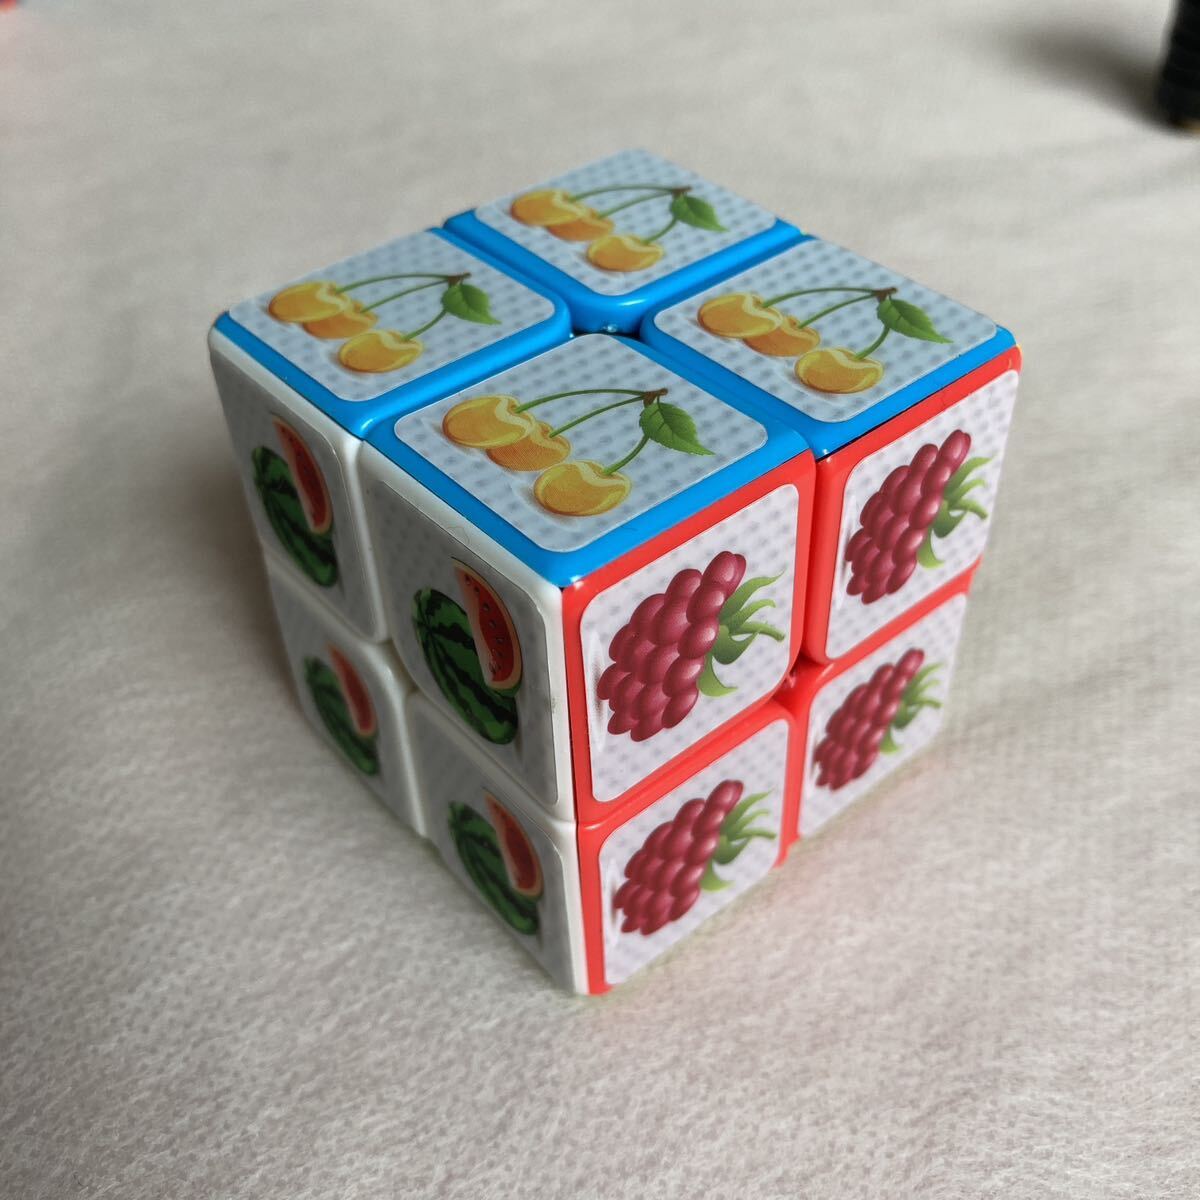 ルービックキューブ キューブ 柄CUBE 知育玩具 大人 子供 おもちゃ 能力訓練 パズル 可愛い 認知症予防 軽量 コンパクト 2×2 3×3 2個